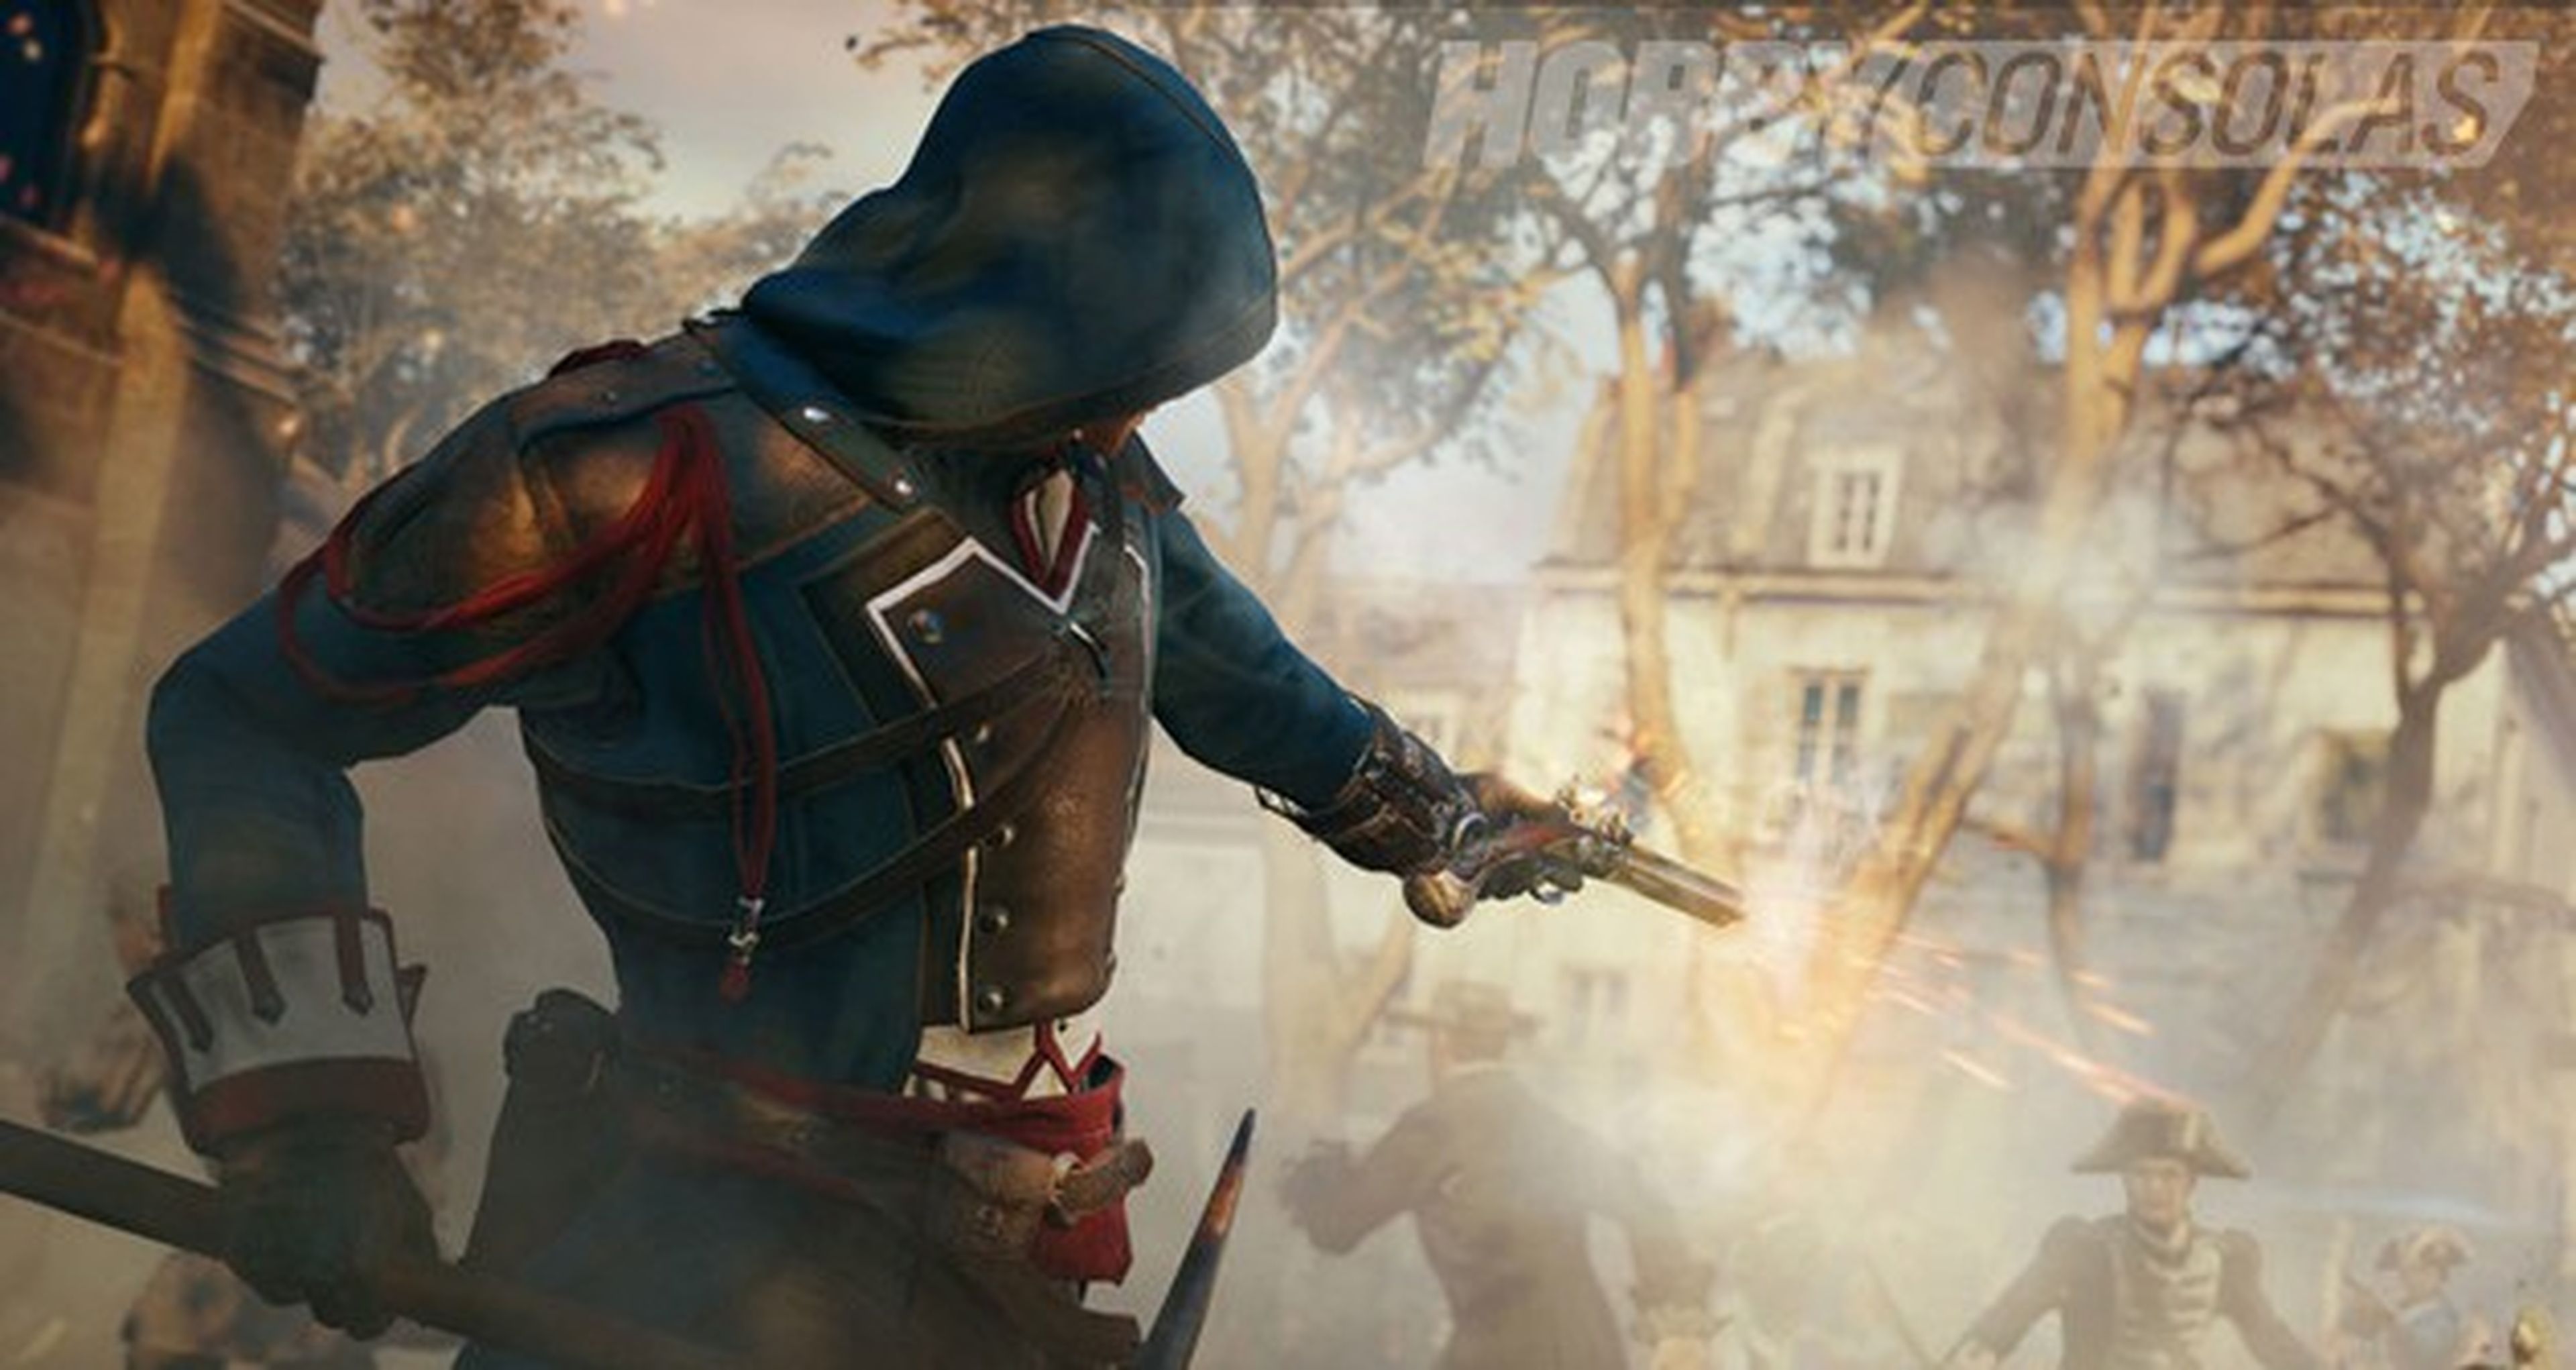 El mundo abierto de Assassin's Creed Unity en su nuevo tráiler gameplay